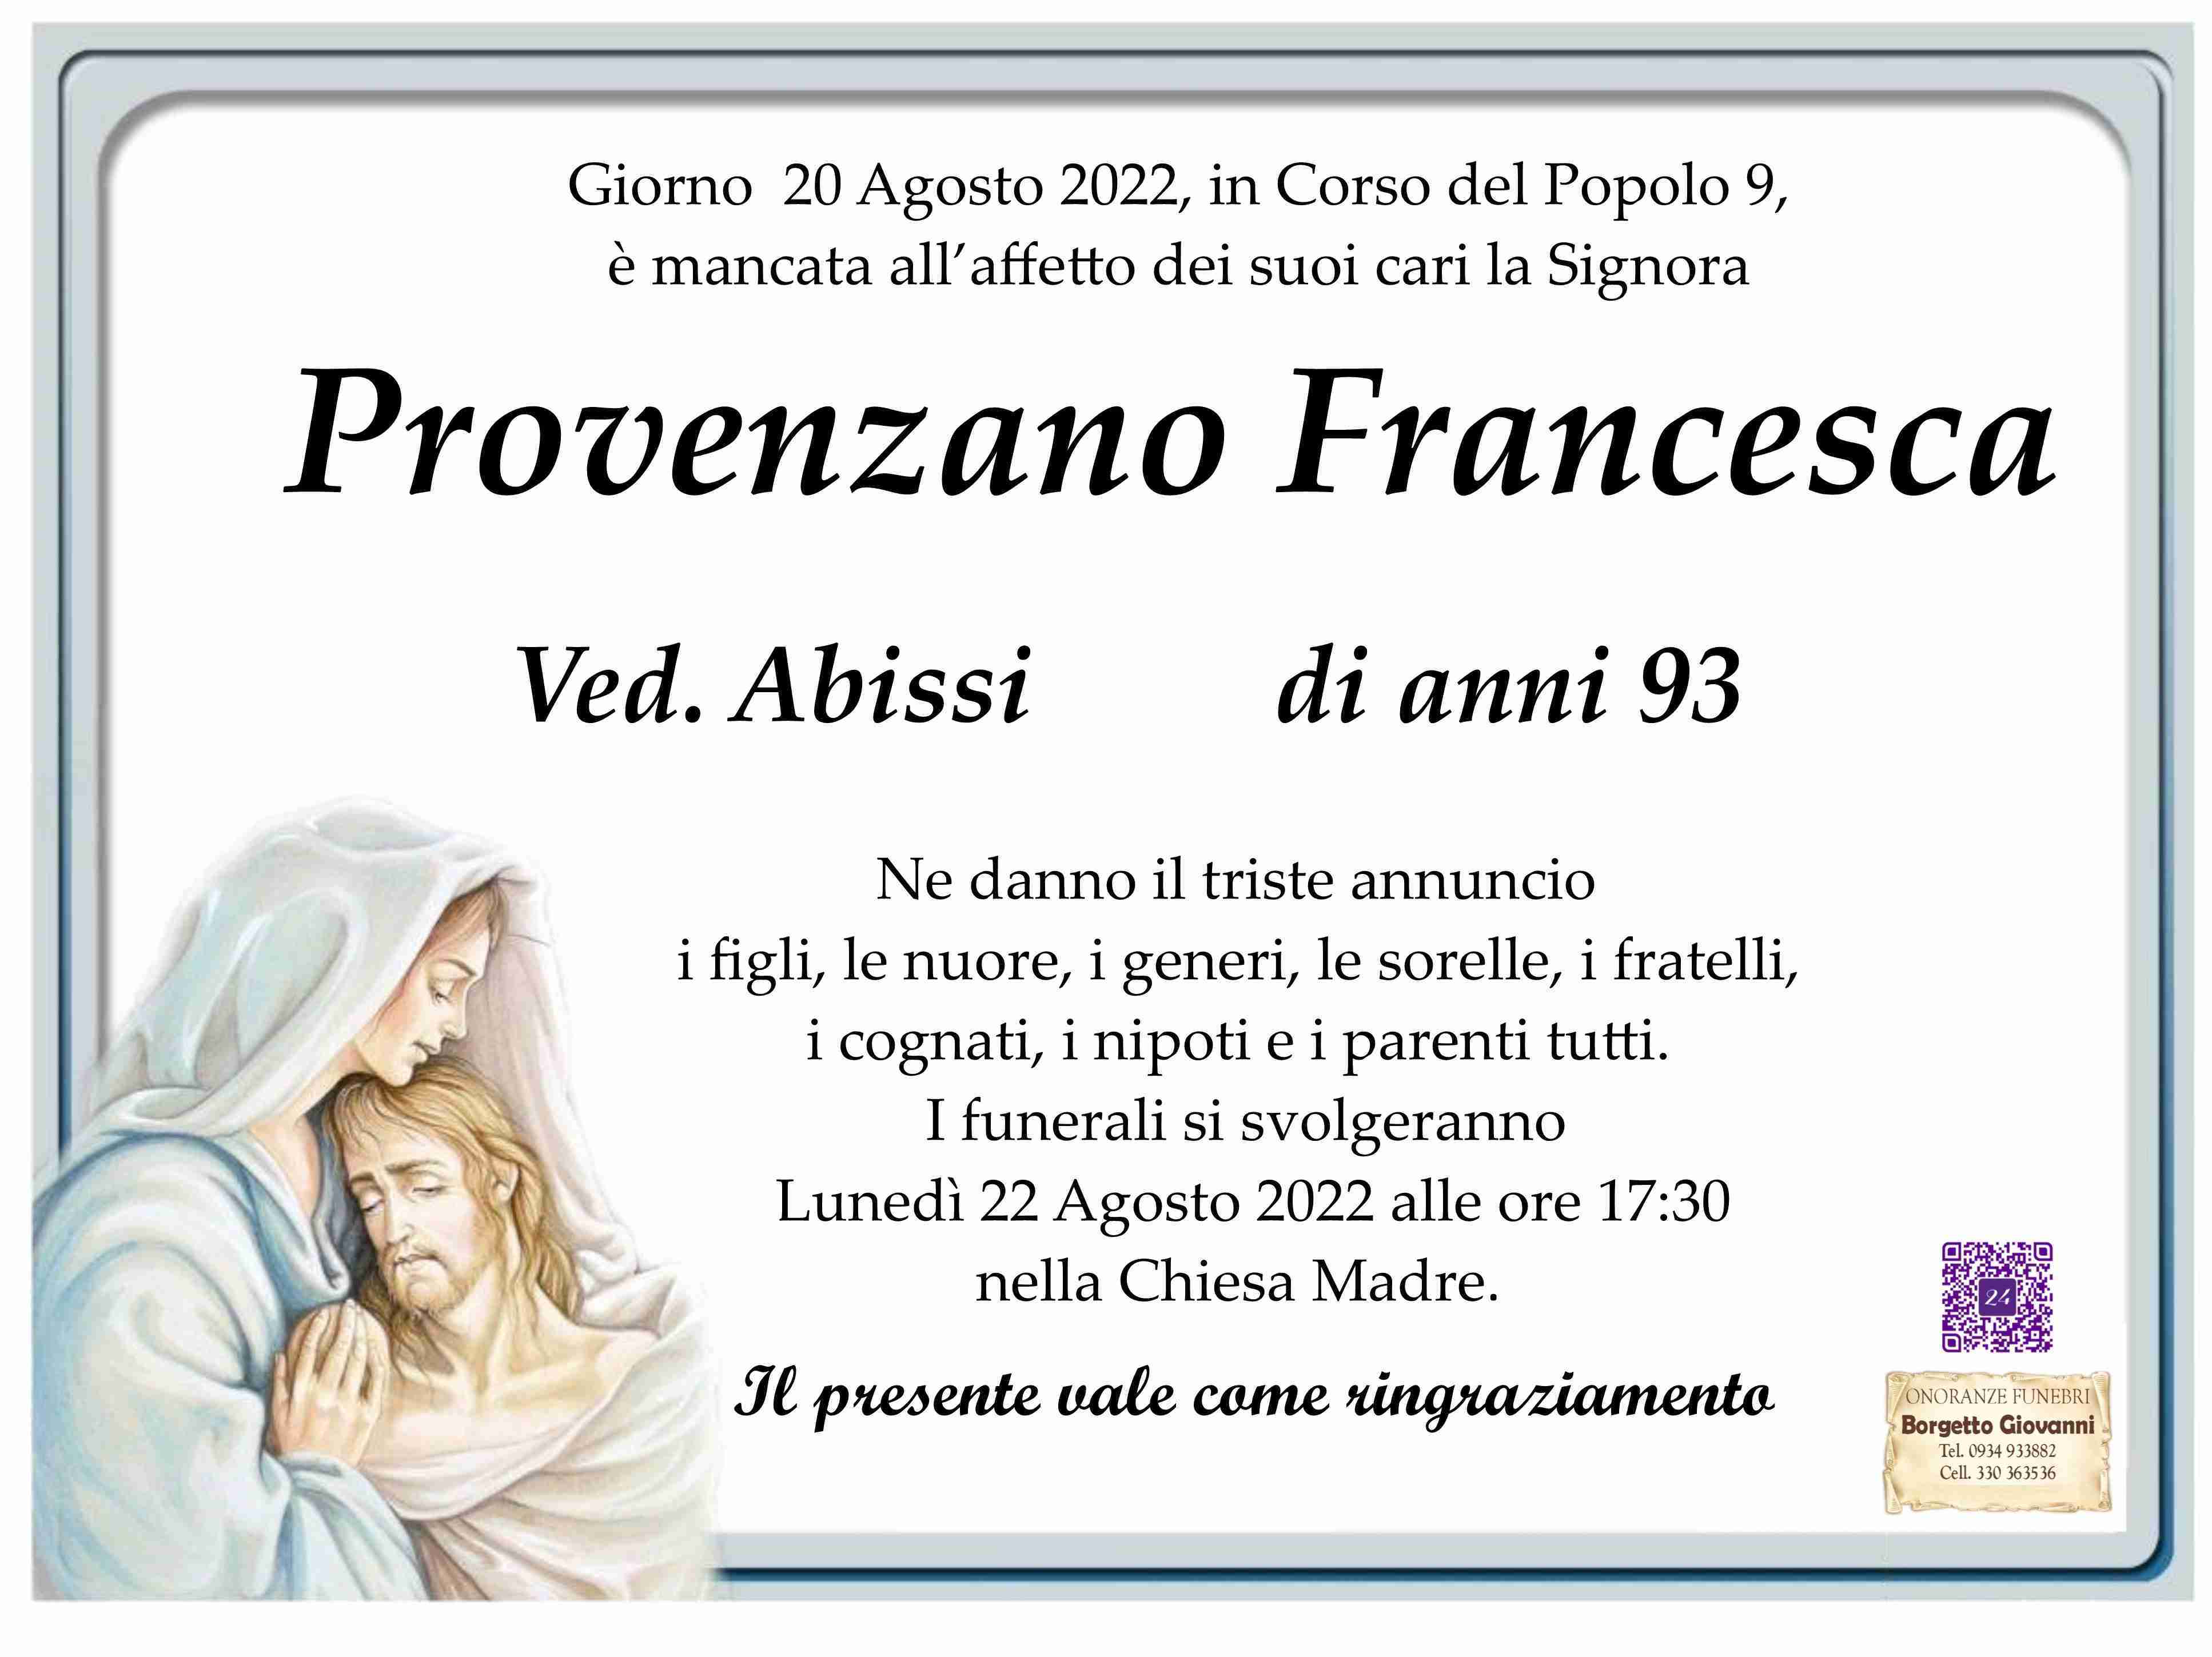 Francesca Provenzano